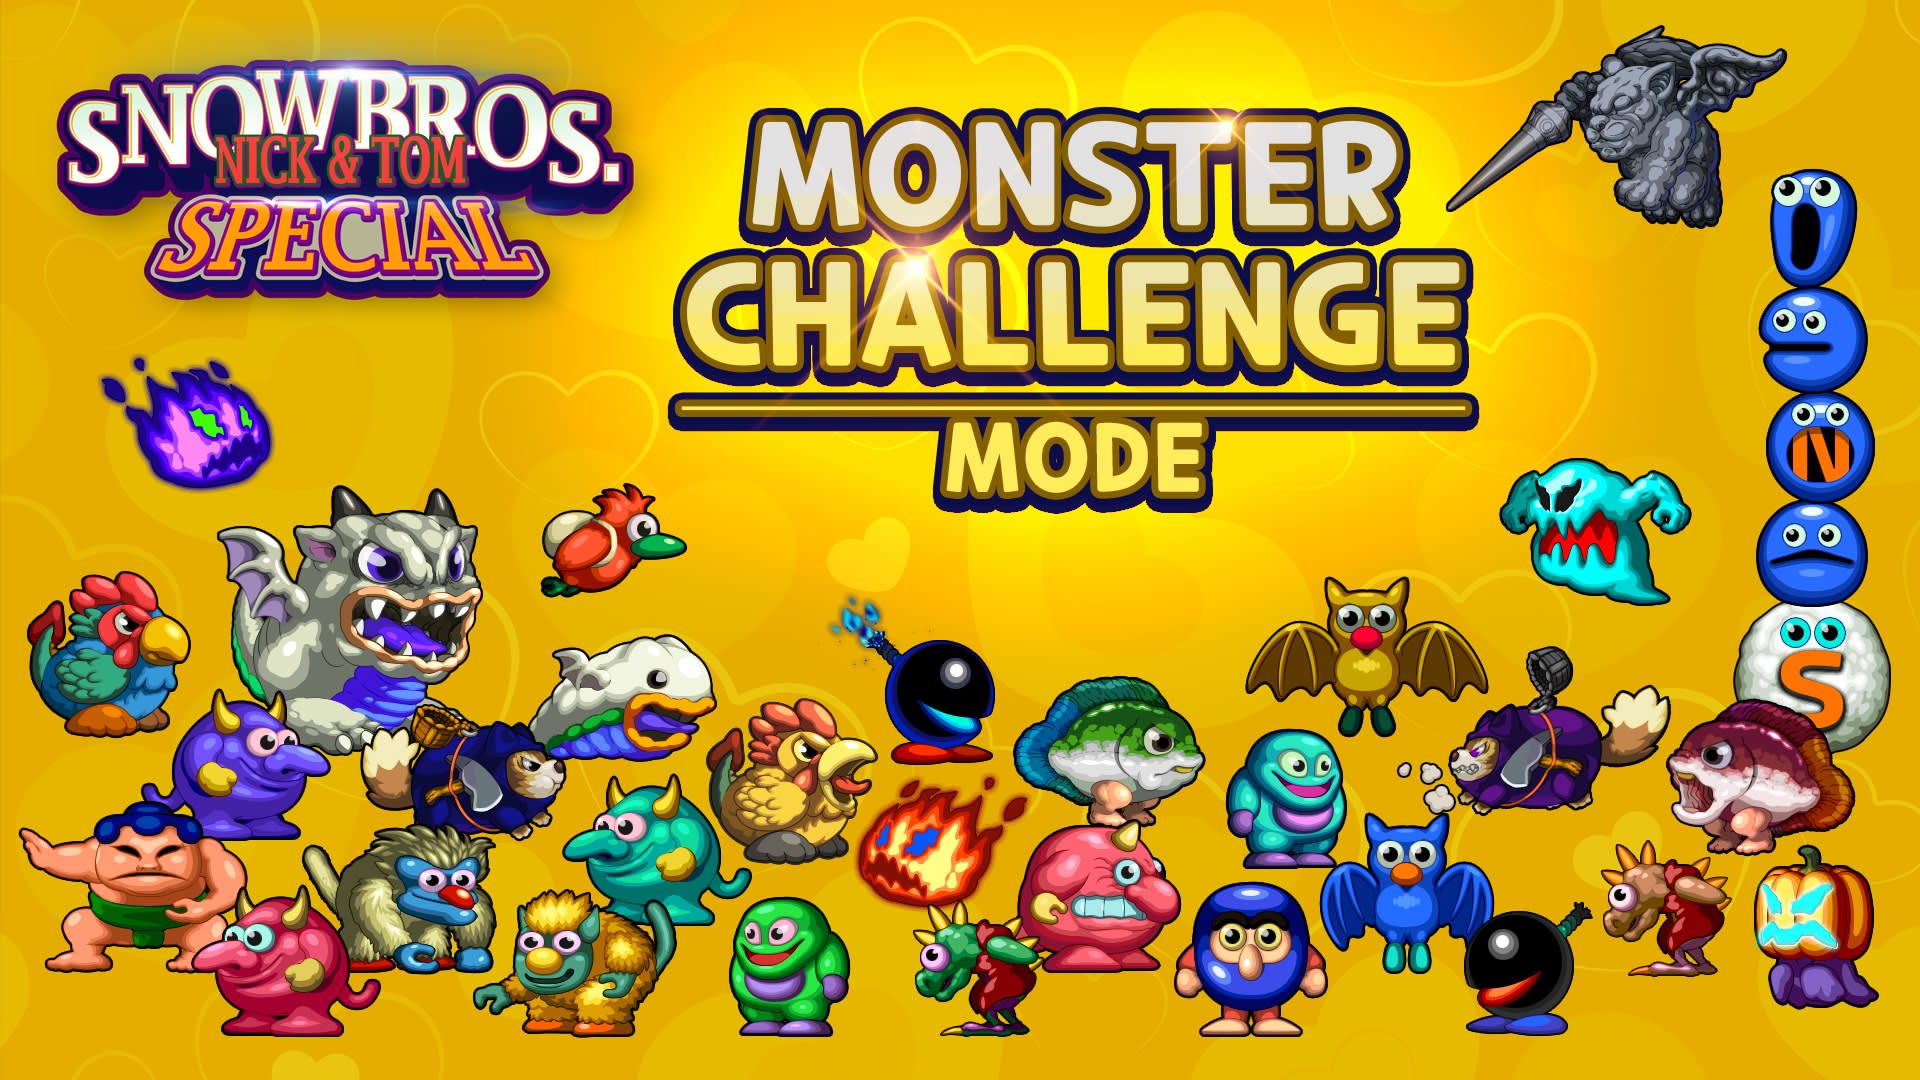 Monster challenge mode